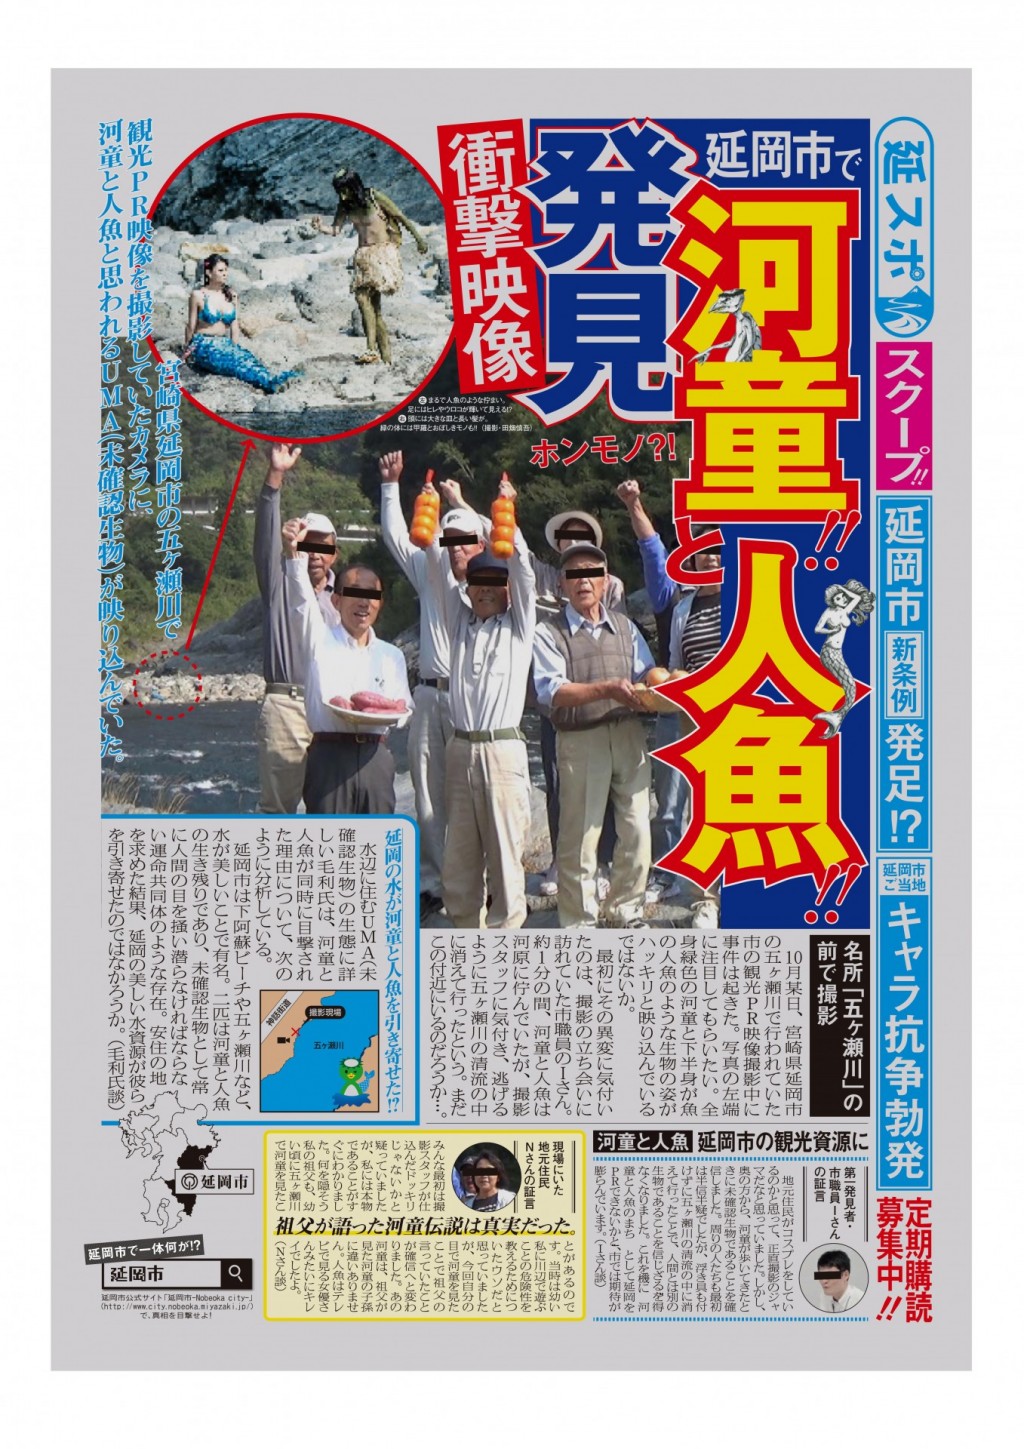 宮崎県 延岡でuma発見 河童と人魚が映り込んだ衝撃映像が公開される 既に特設サイトを設置 ガジェット通信 Getnews